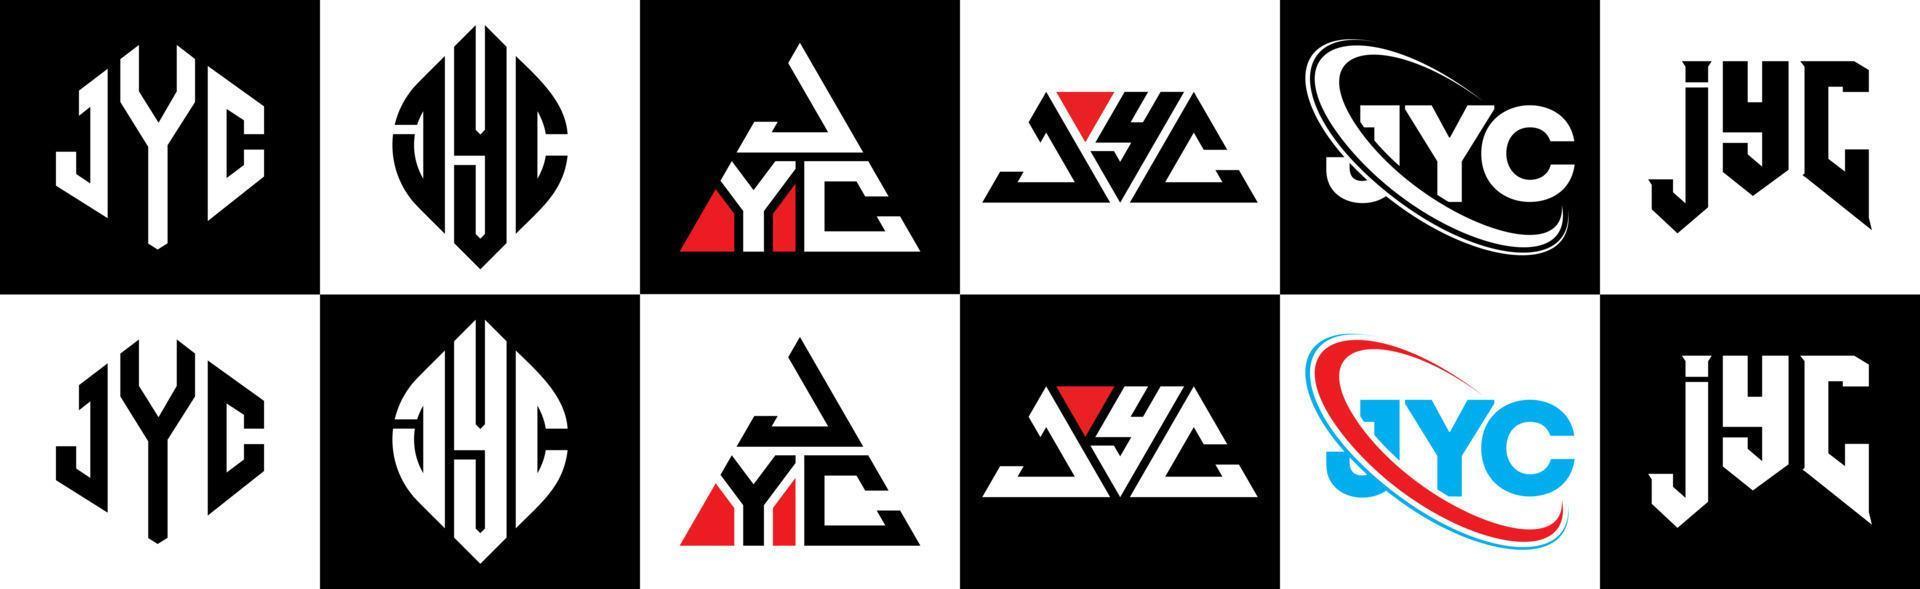 création de logo de lettre jyc en six styles. jyc polygone, cercle, triangle, hexagone, style plat et simple avec logo de lettre de variation de couleur noir et blanc dans un plan de travail. logo jyc minimaliste et classique vecteur